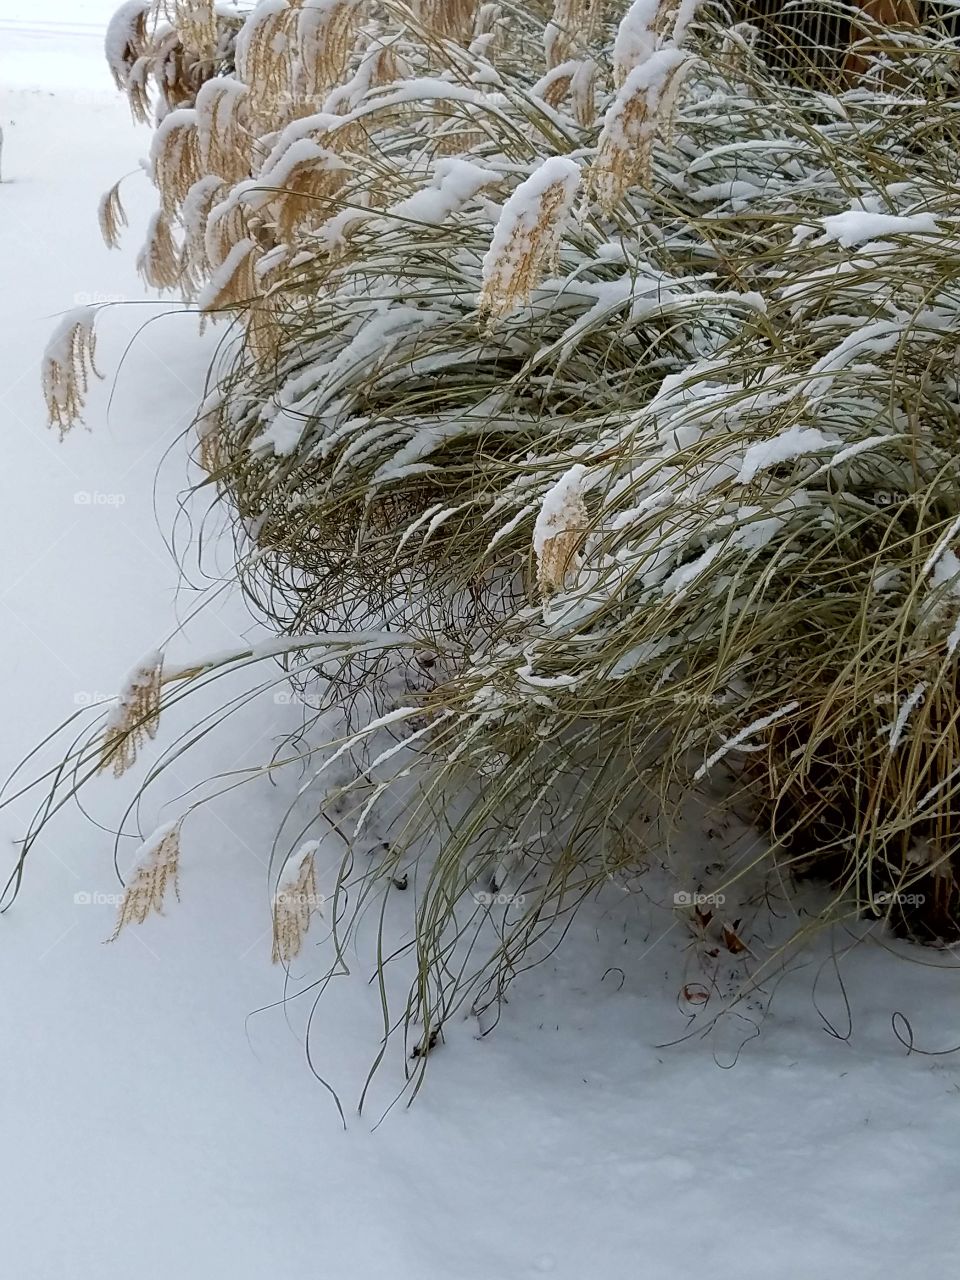 Decorative grasses after a snowstorm, Maiden Grass.